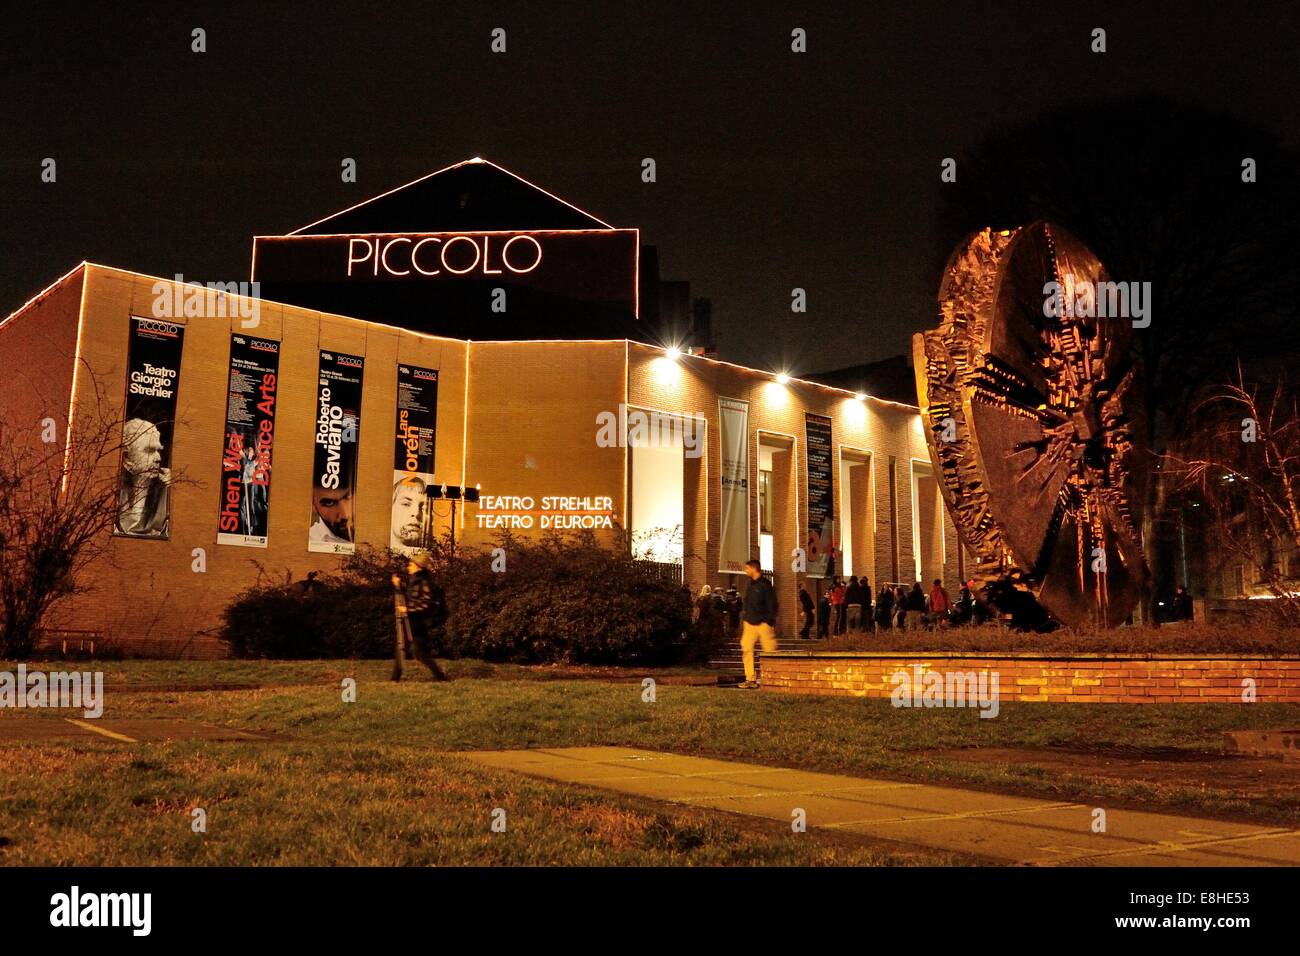 Piccolo Teatro Strehler Milano, visione notturna ('Disco' di Arnaldo Pomodoro sul lato destro) Foto Stock